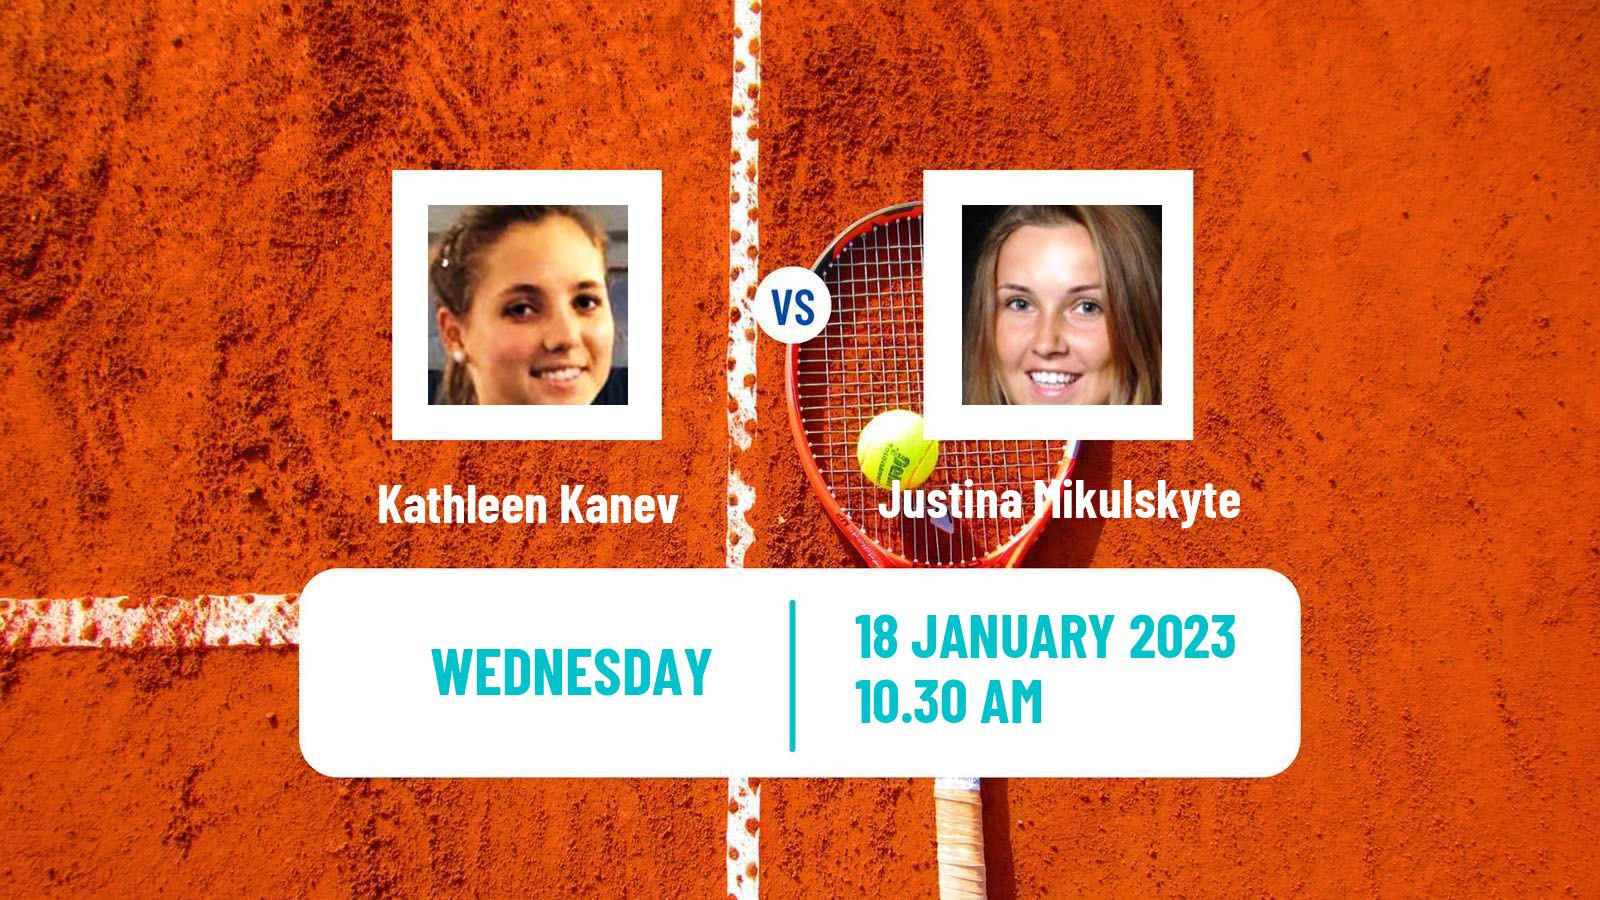 Tennis ITF Tournaments Kathleen Kanev - Justina Mikulskyte